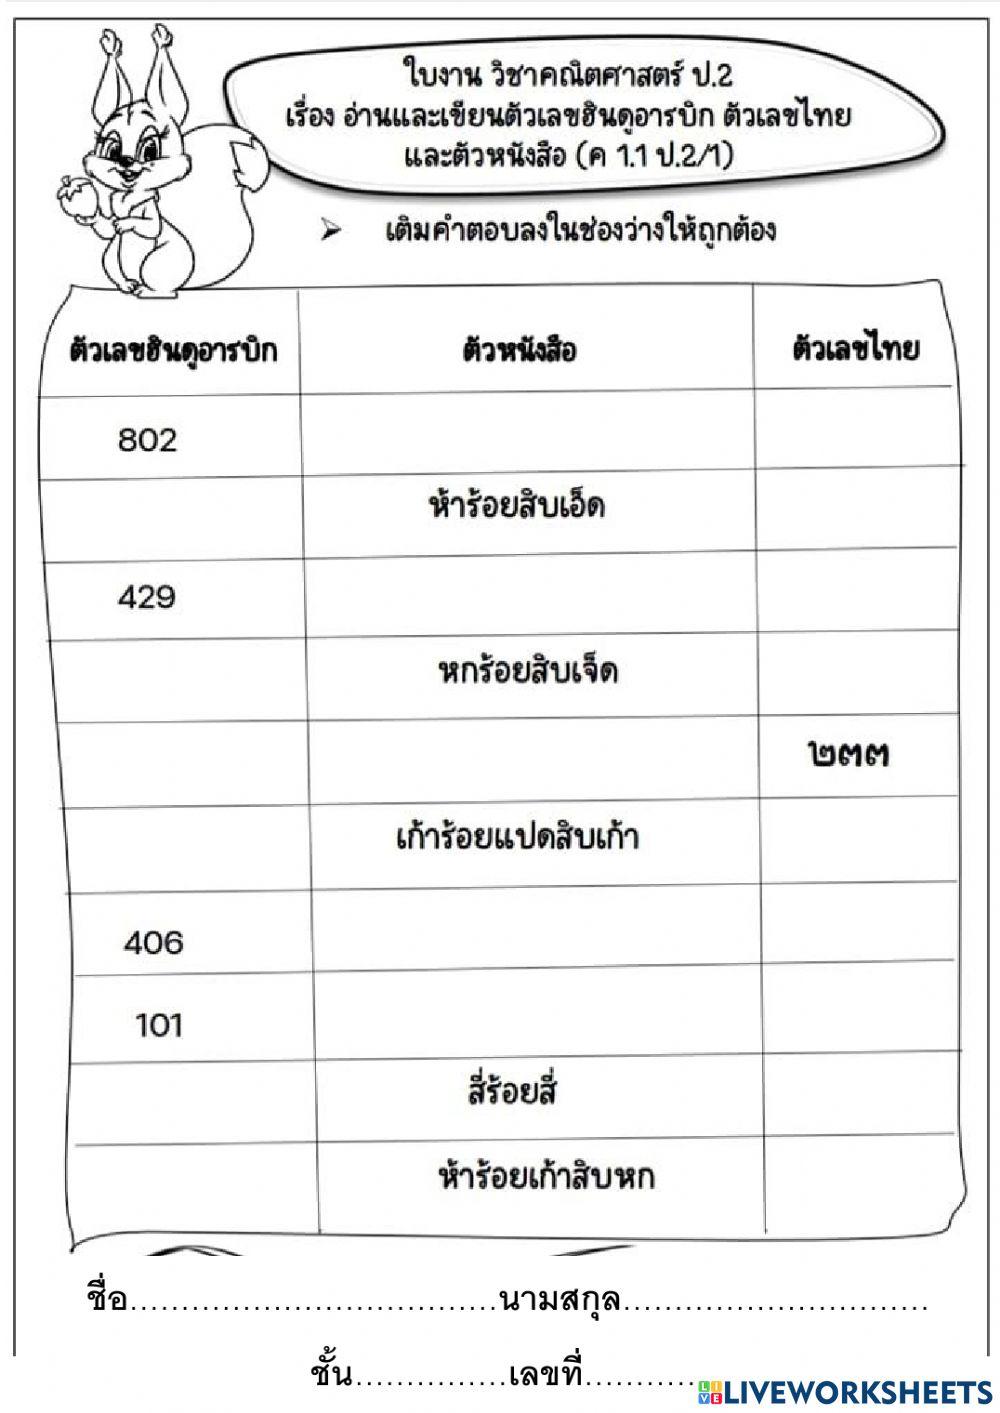 ใบงานคณิต ป.2 การเขียนเลขฮินดูอารบิก เลขไทย  และตัวหนังสือ